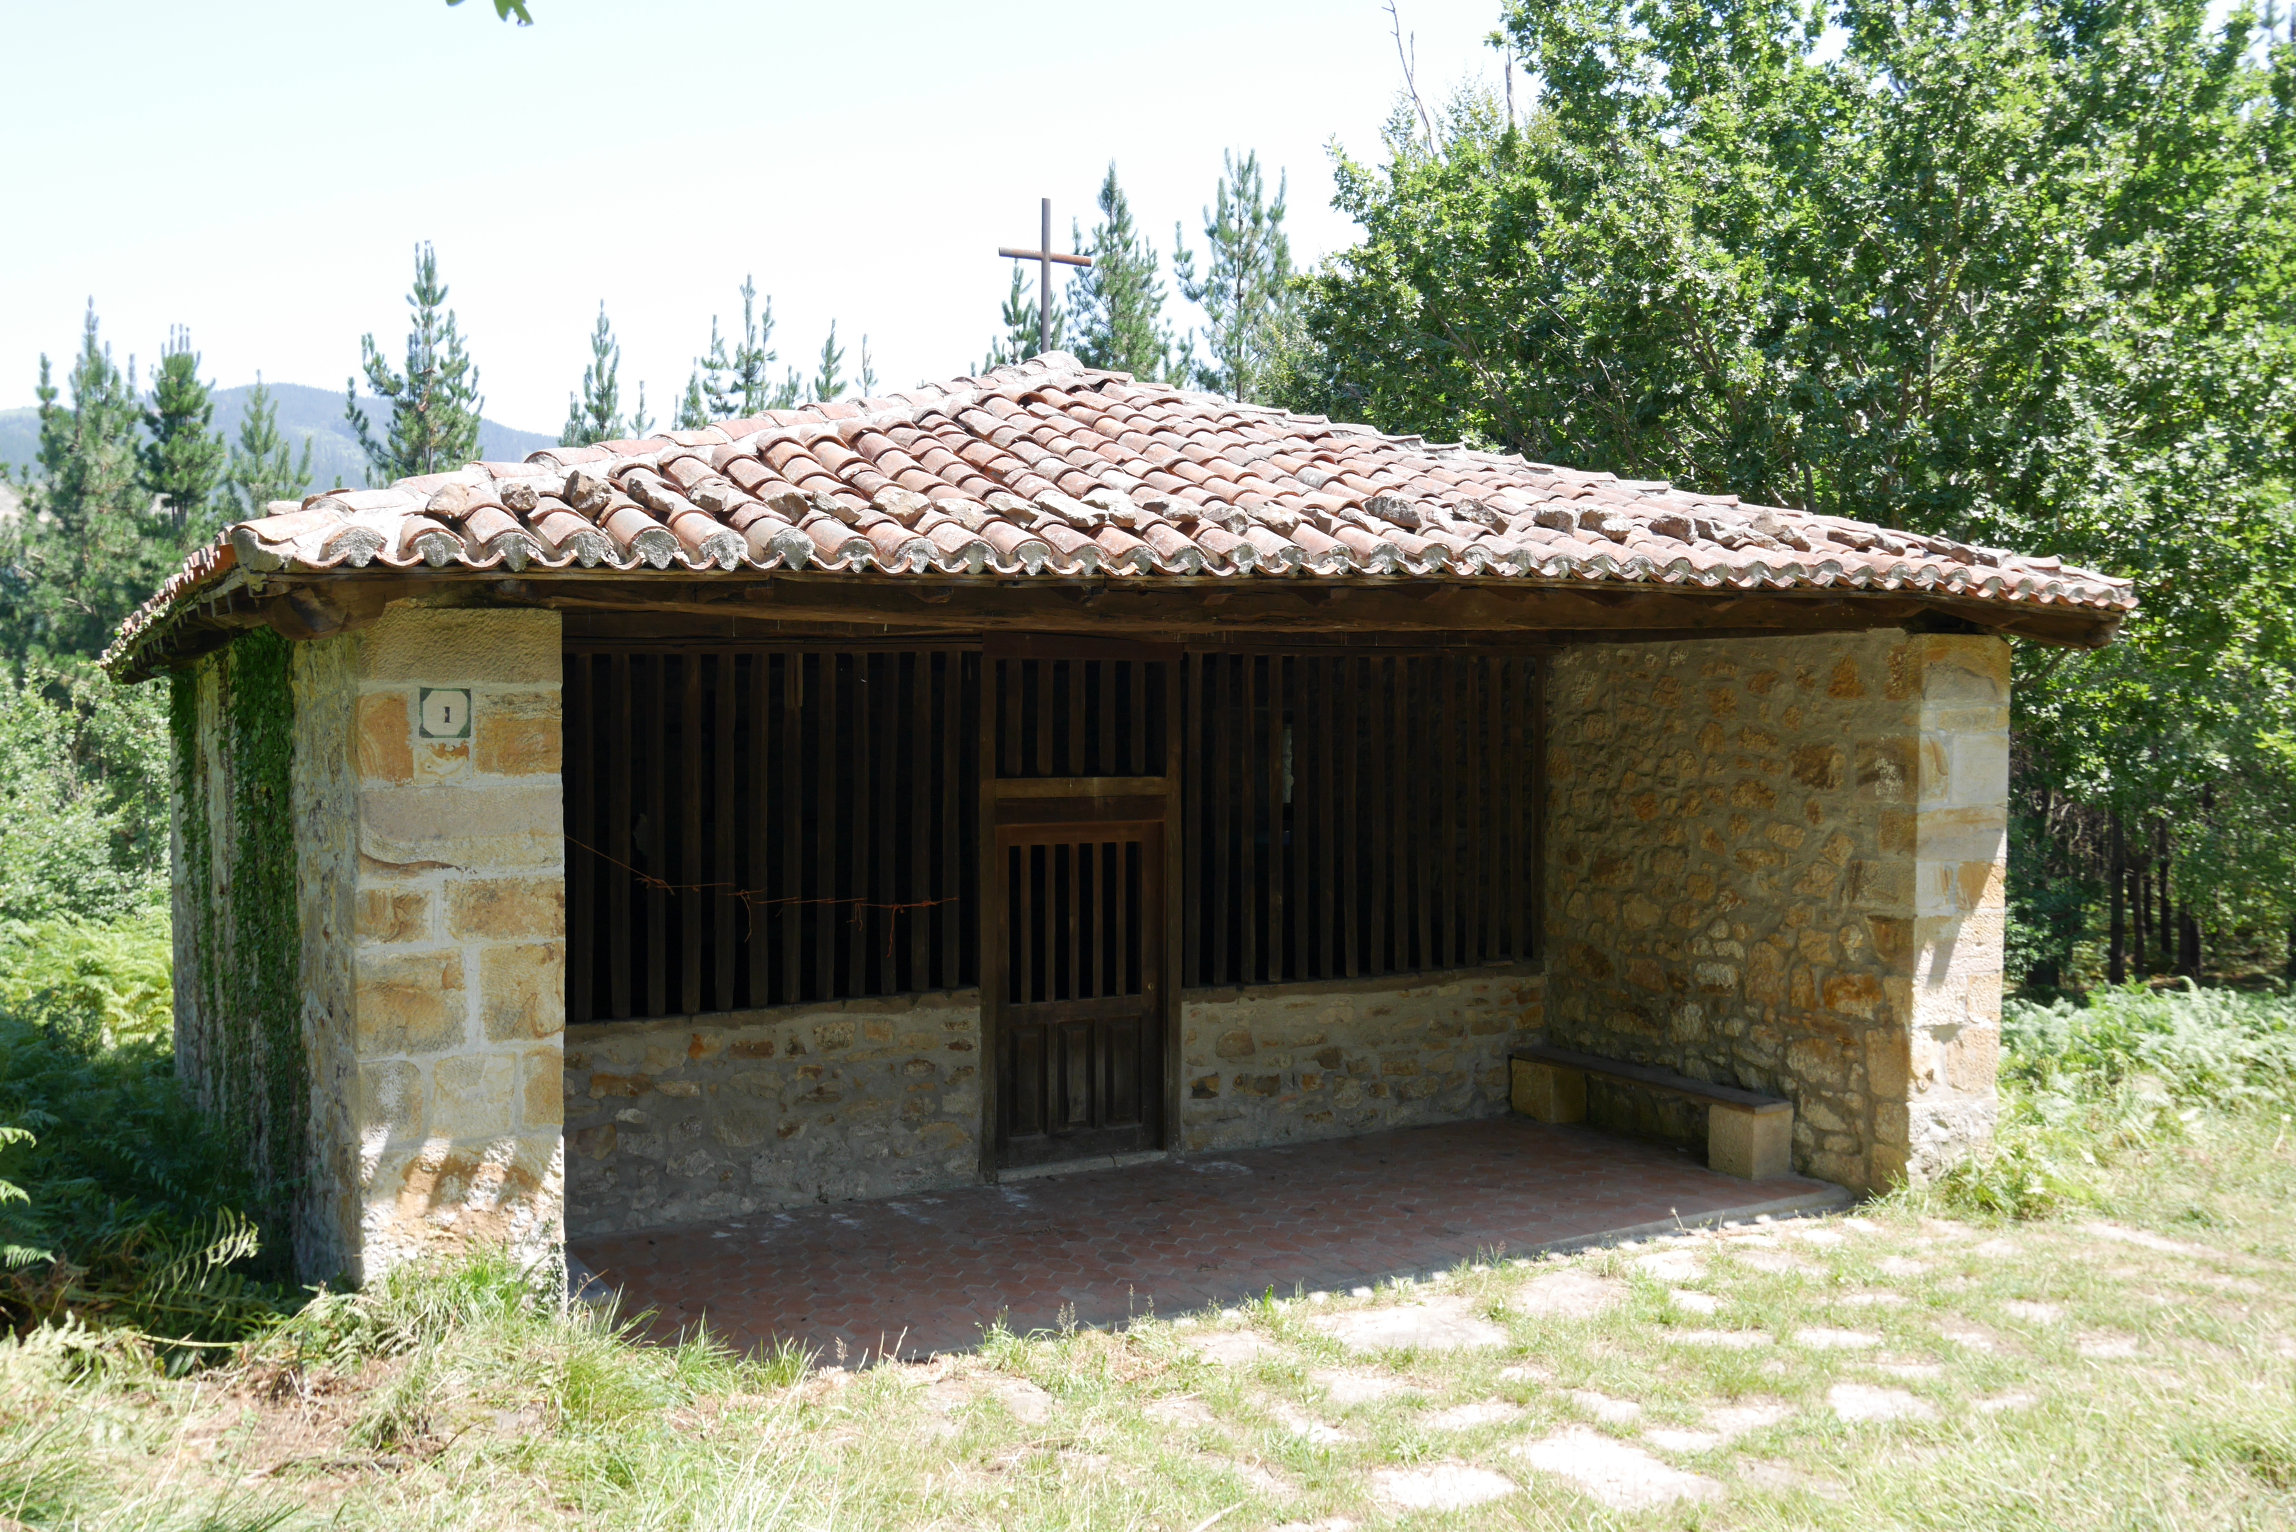 Santa Eufemia ermita, Elorrio